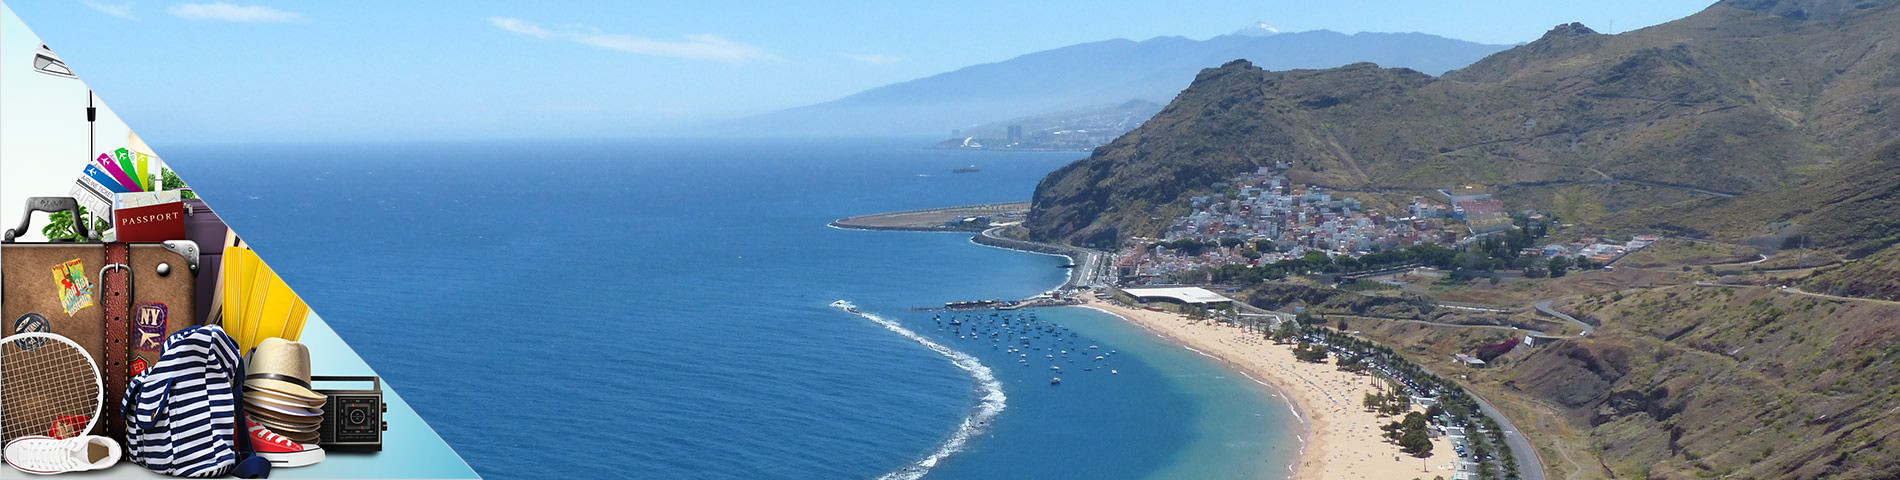 Tenerife - Španělština pro Cestovní ruch